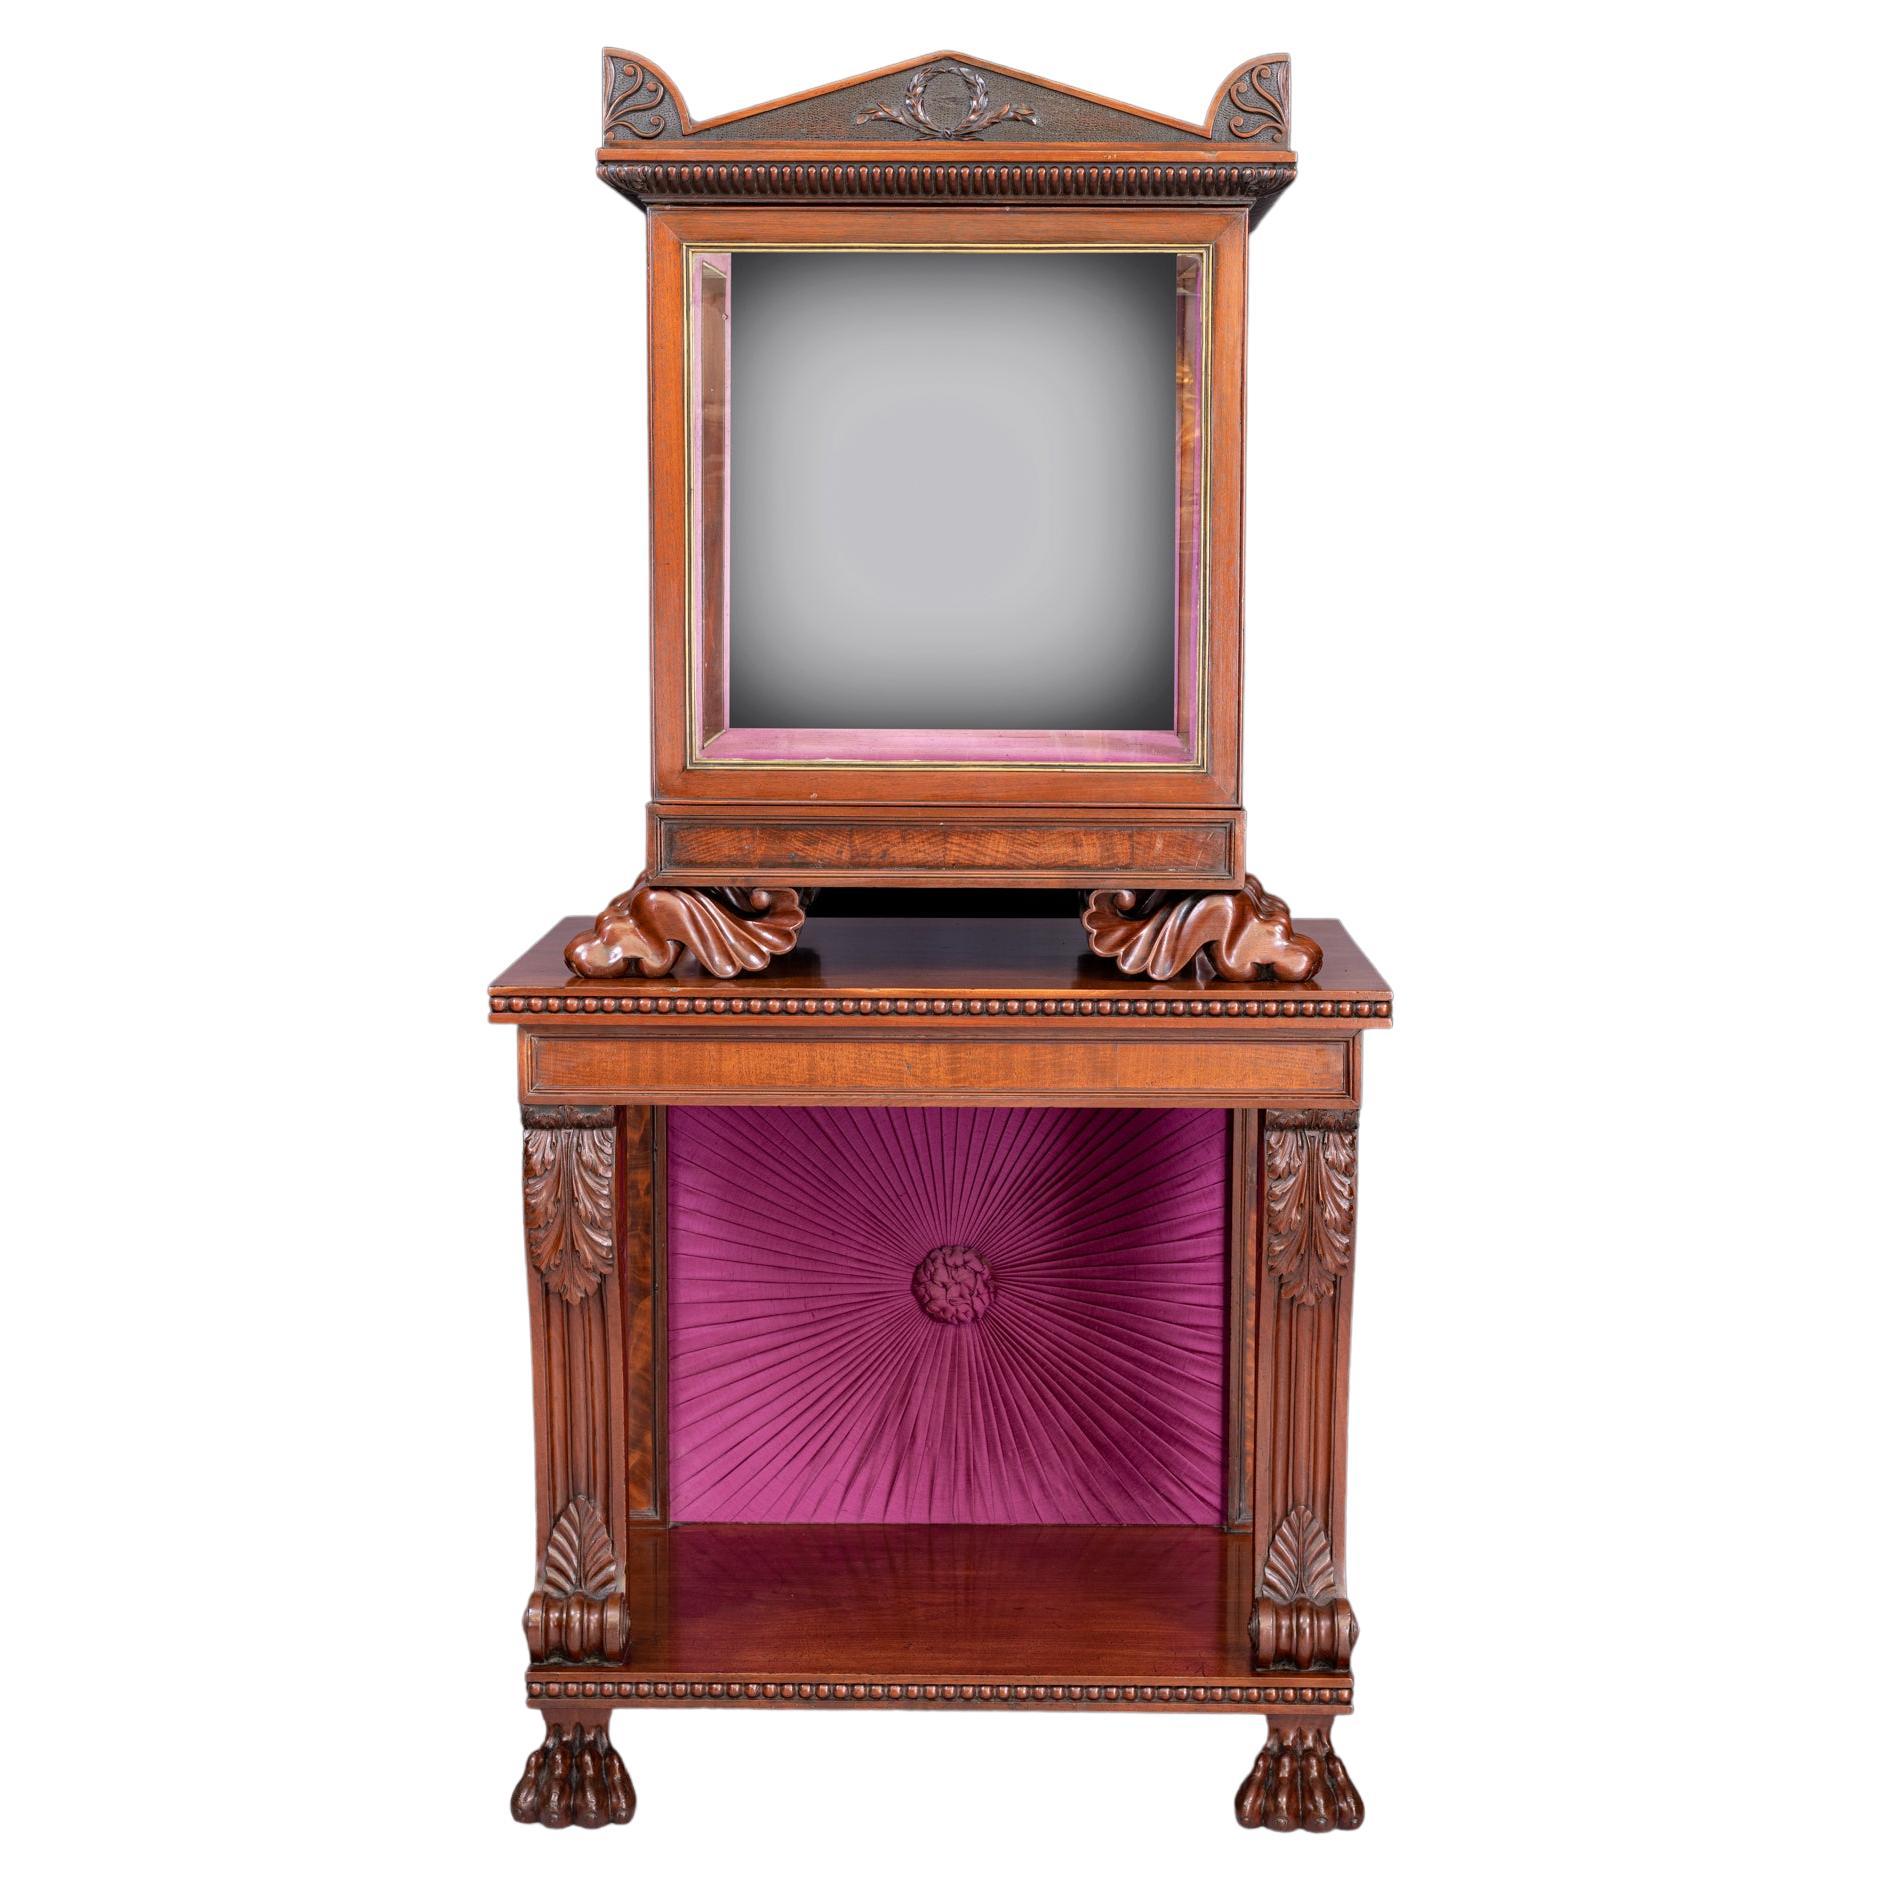 Trophée/meuble de présentation de style Régence irlandais du 19ème siècle estampillé Gillington's Dublin